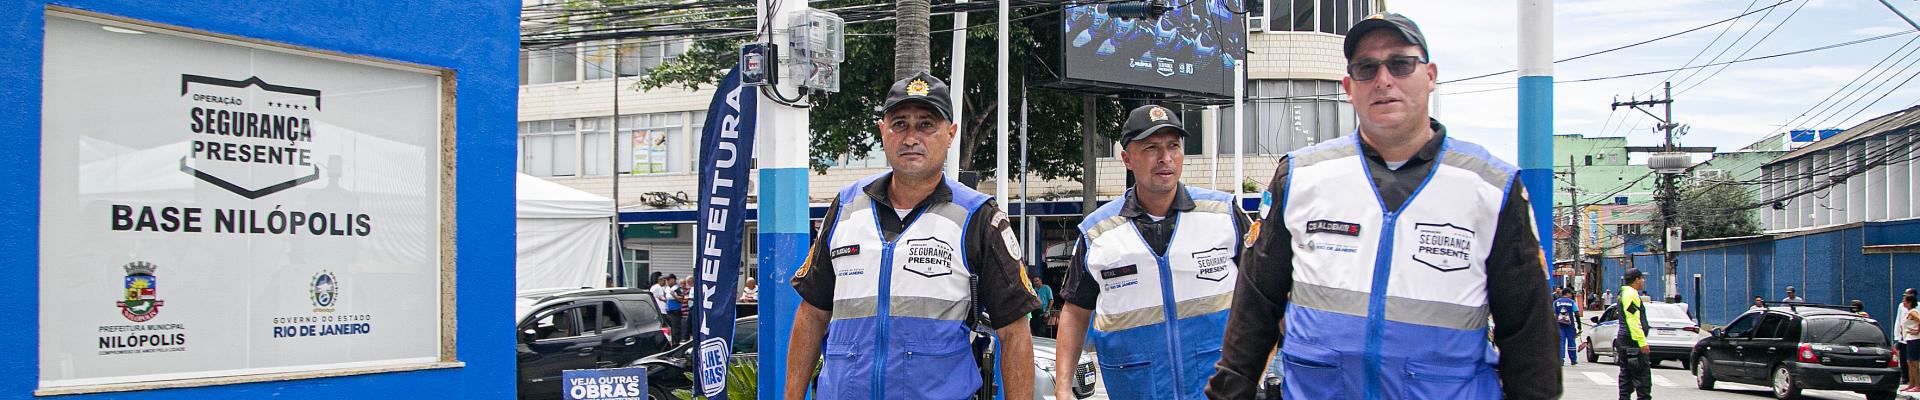 Policiais do Segurança Presente no primeiro dia de atividades pelas ruas de Nilópolis